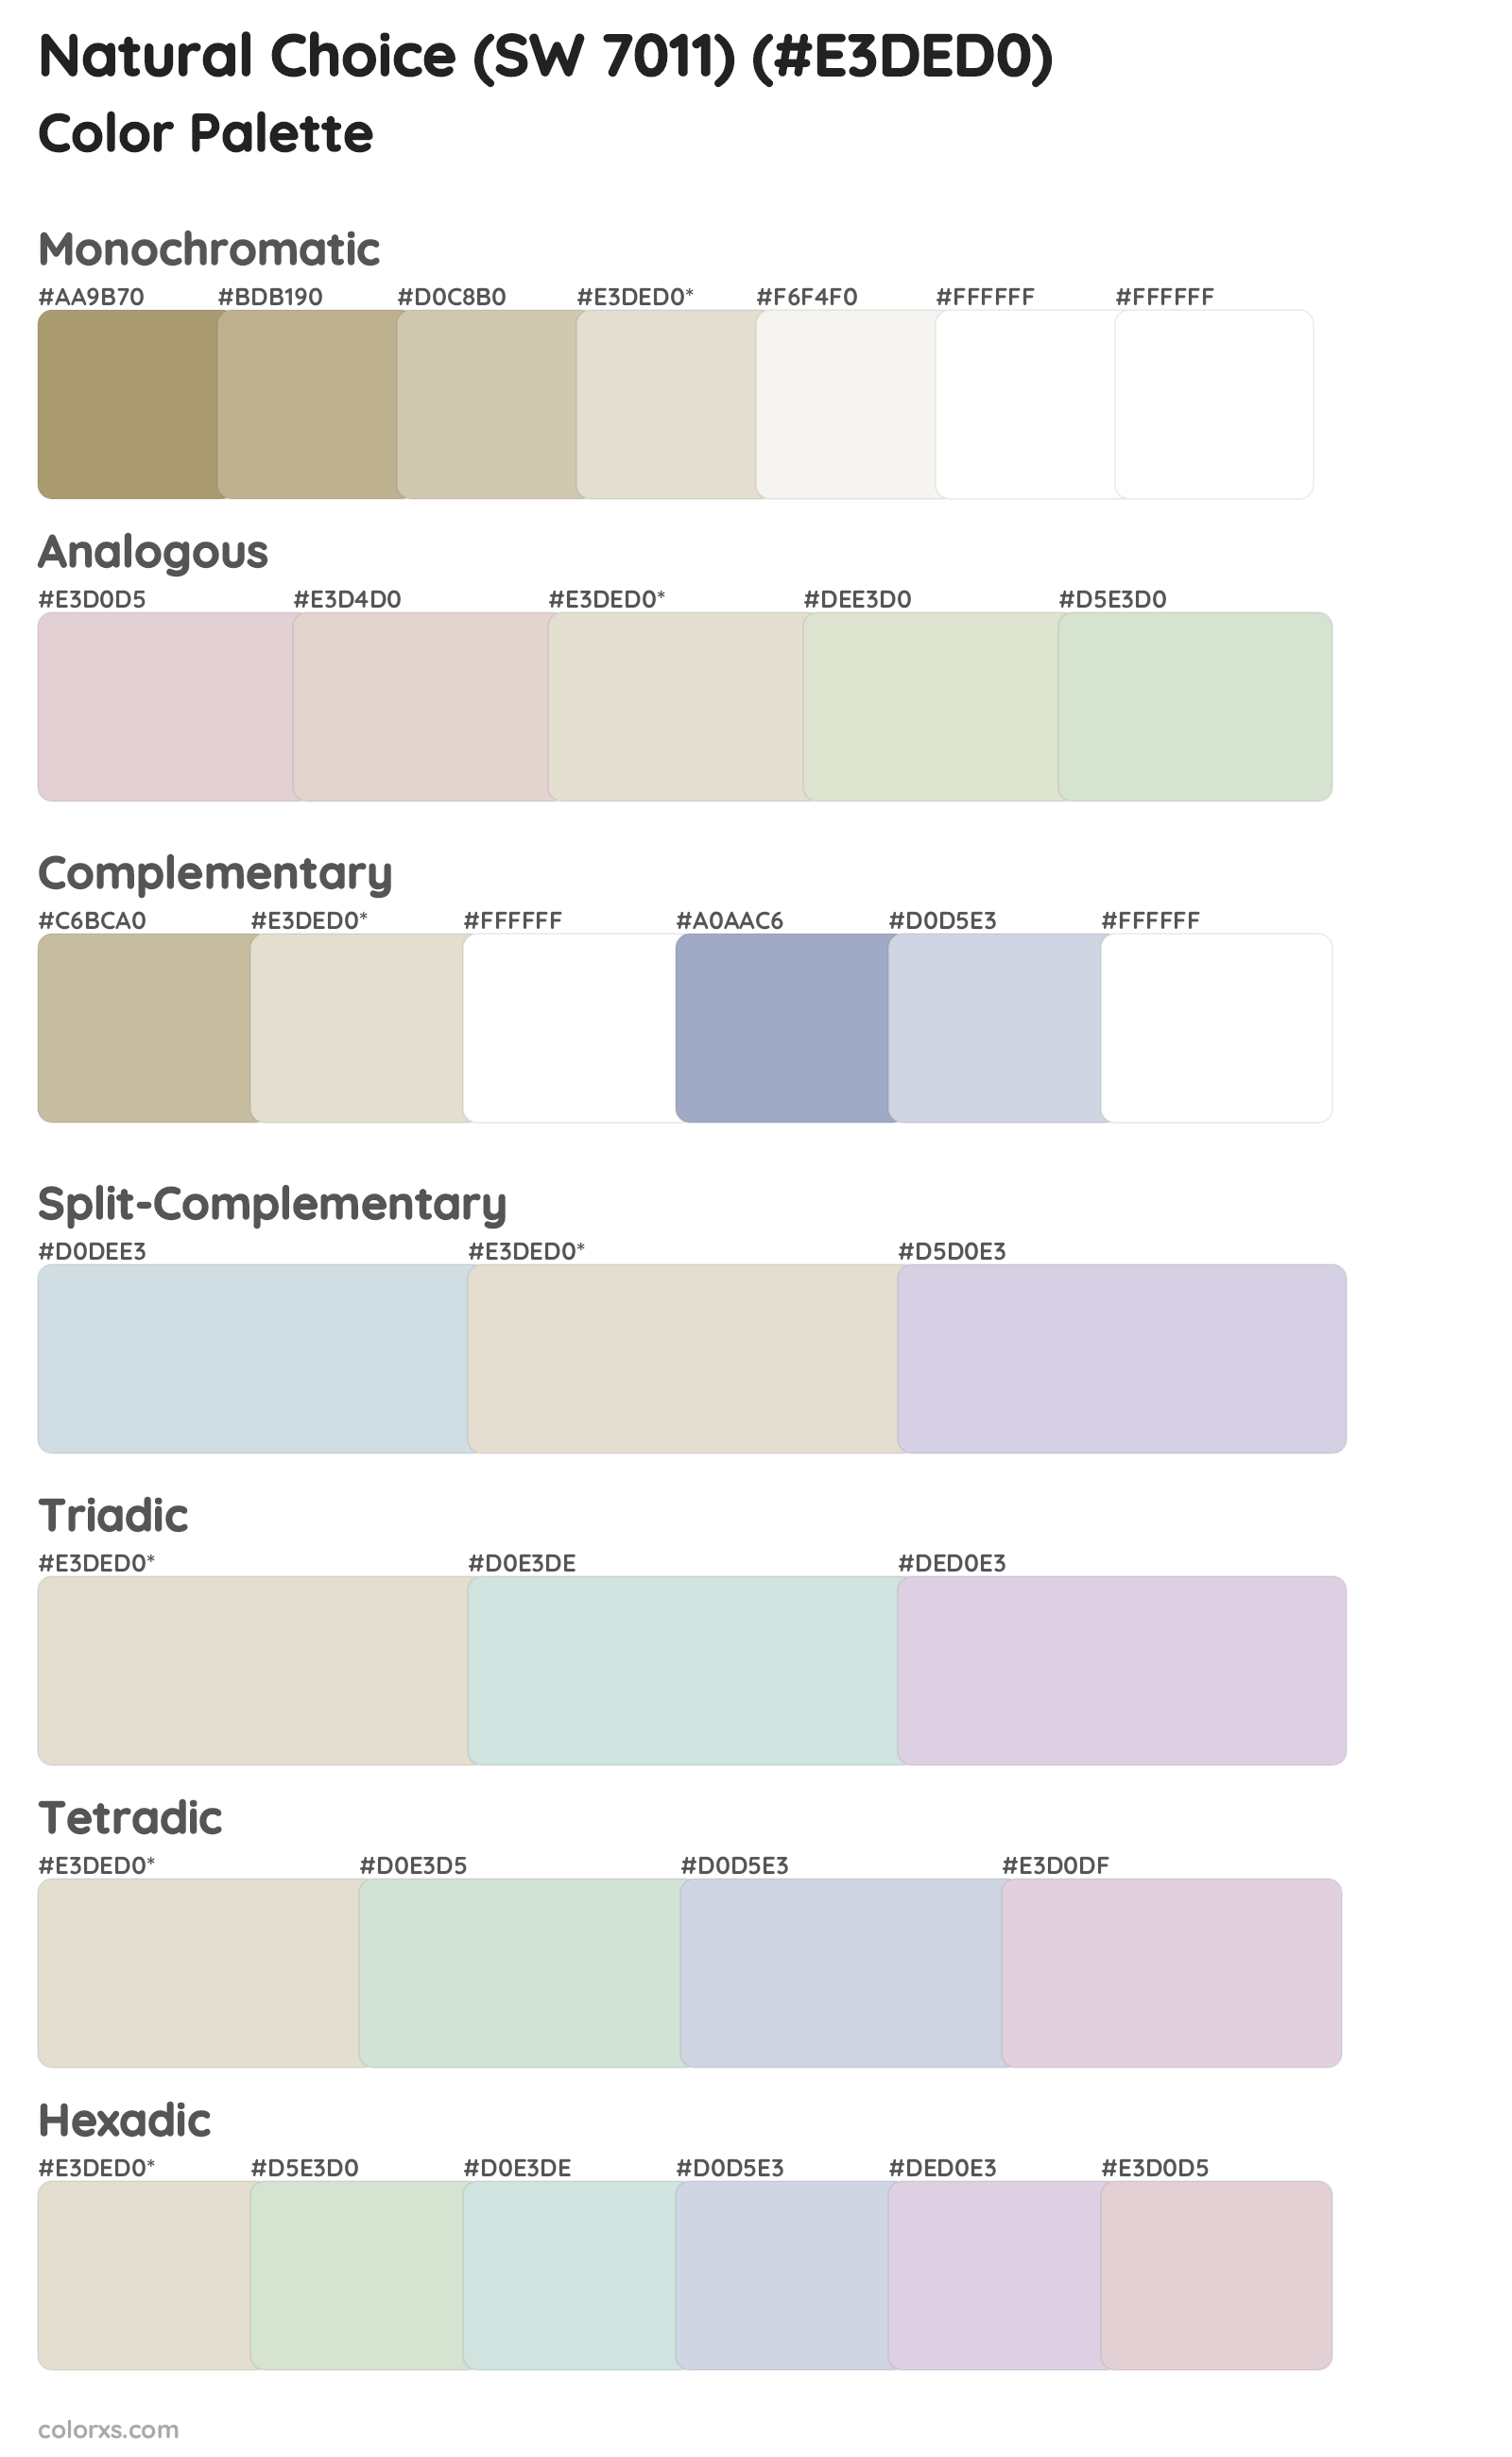 Natural Choice (SW 7011) Color Scheme Palettes